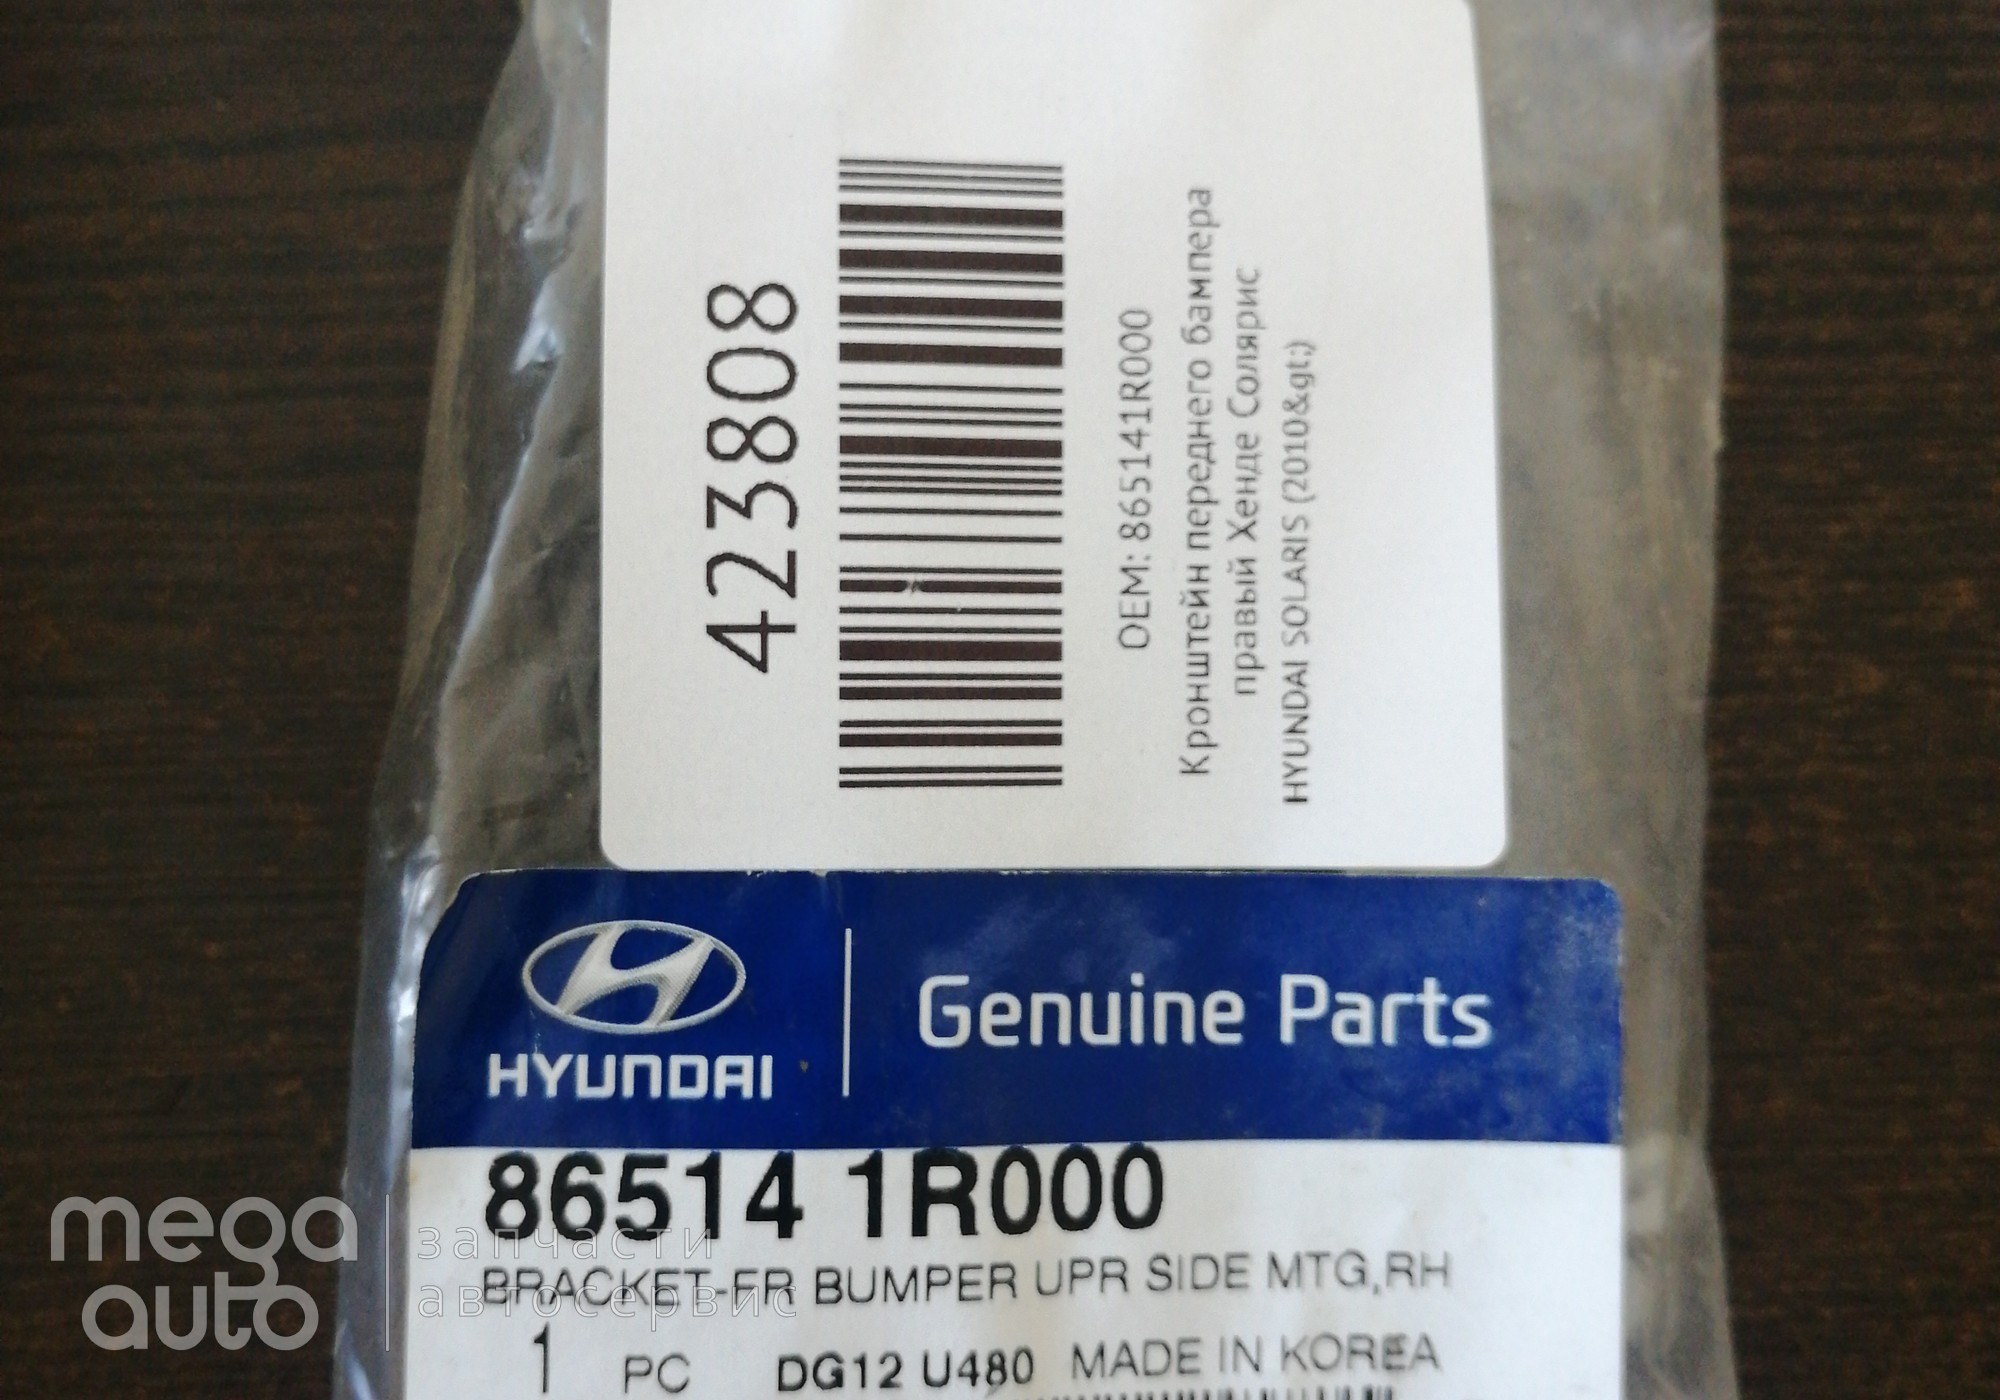 865141R000 Кронштейн переднего бампера правый Хенде Солярис для Hyundai Solaris